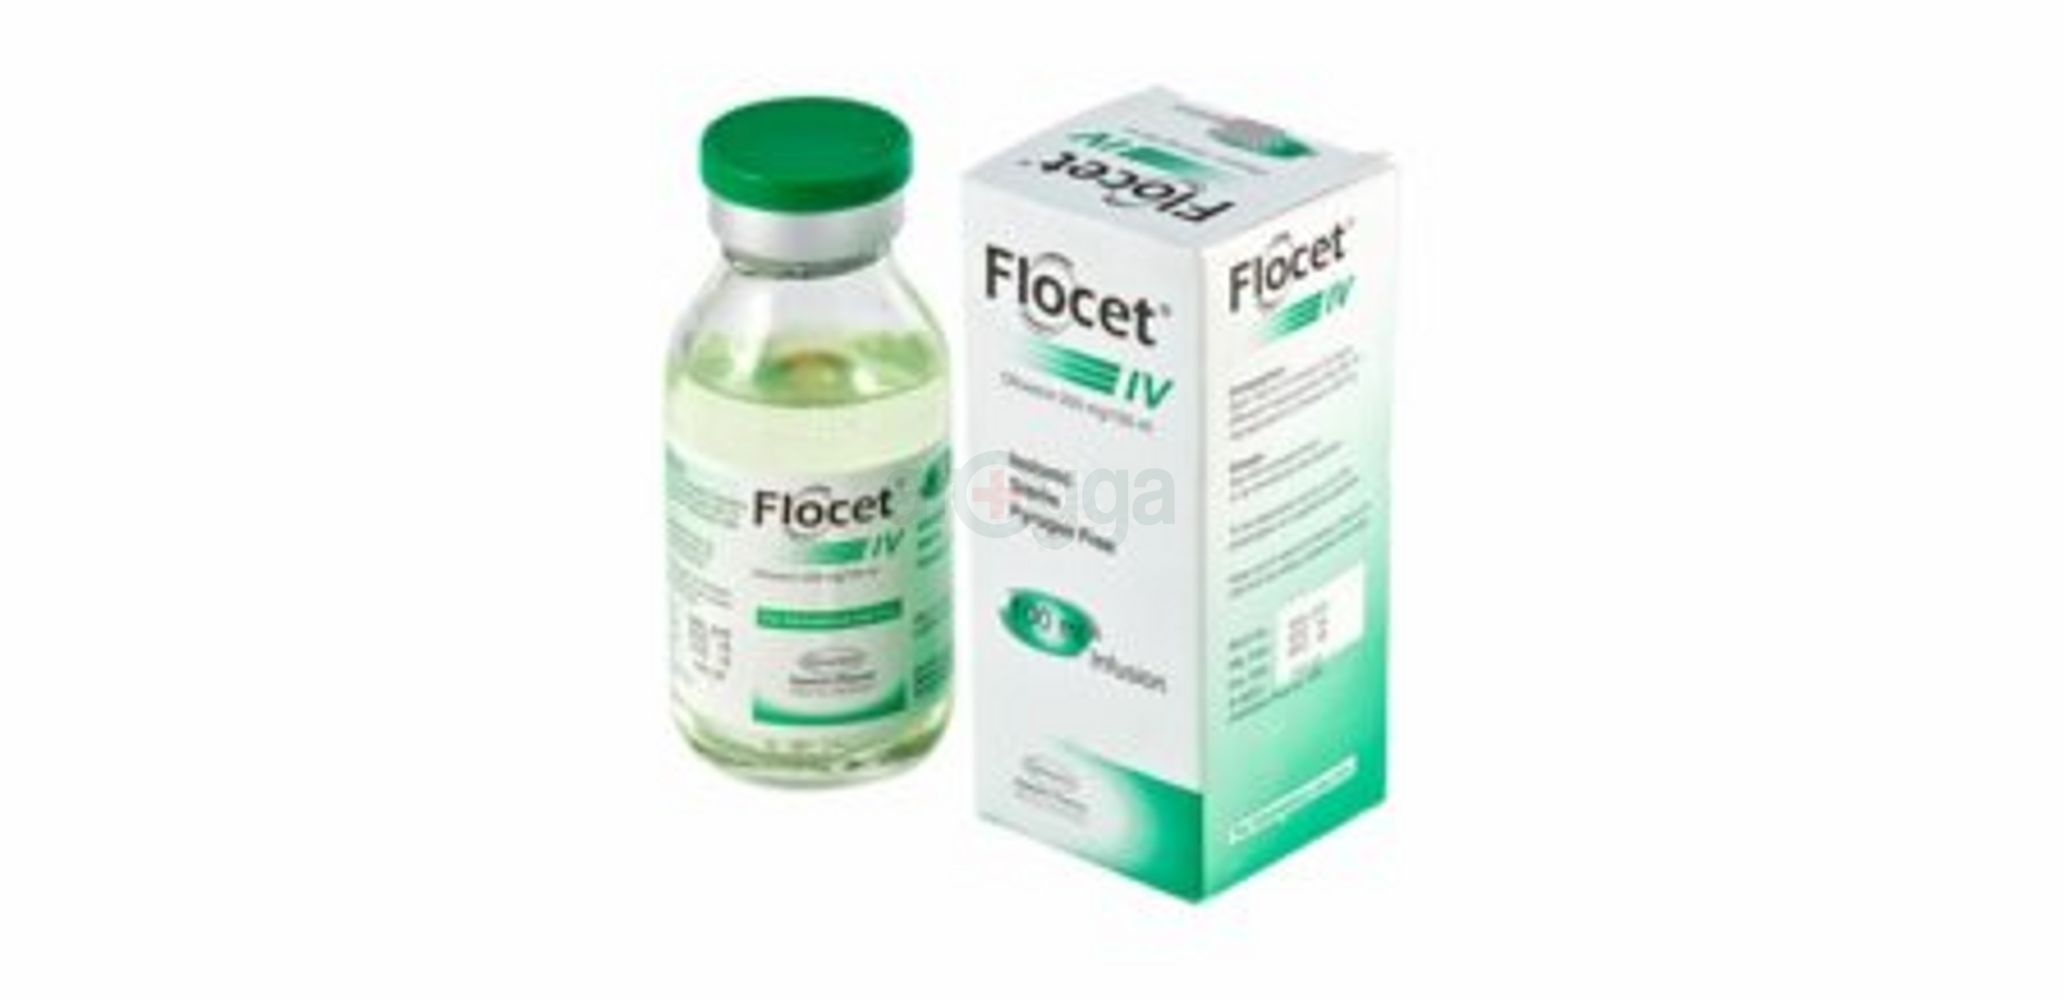 Flocet IV